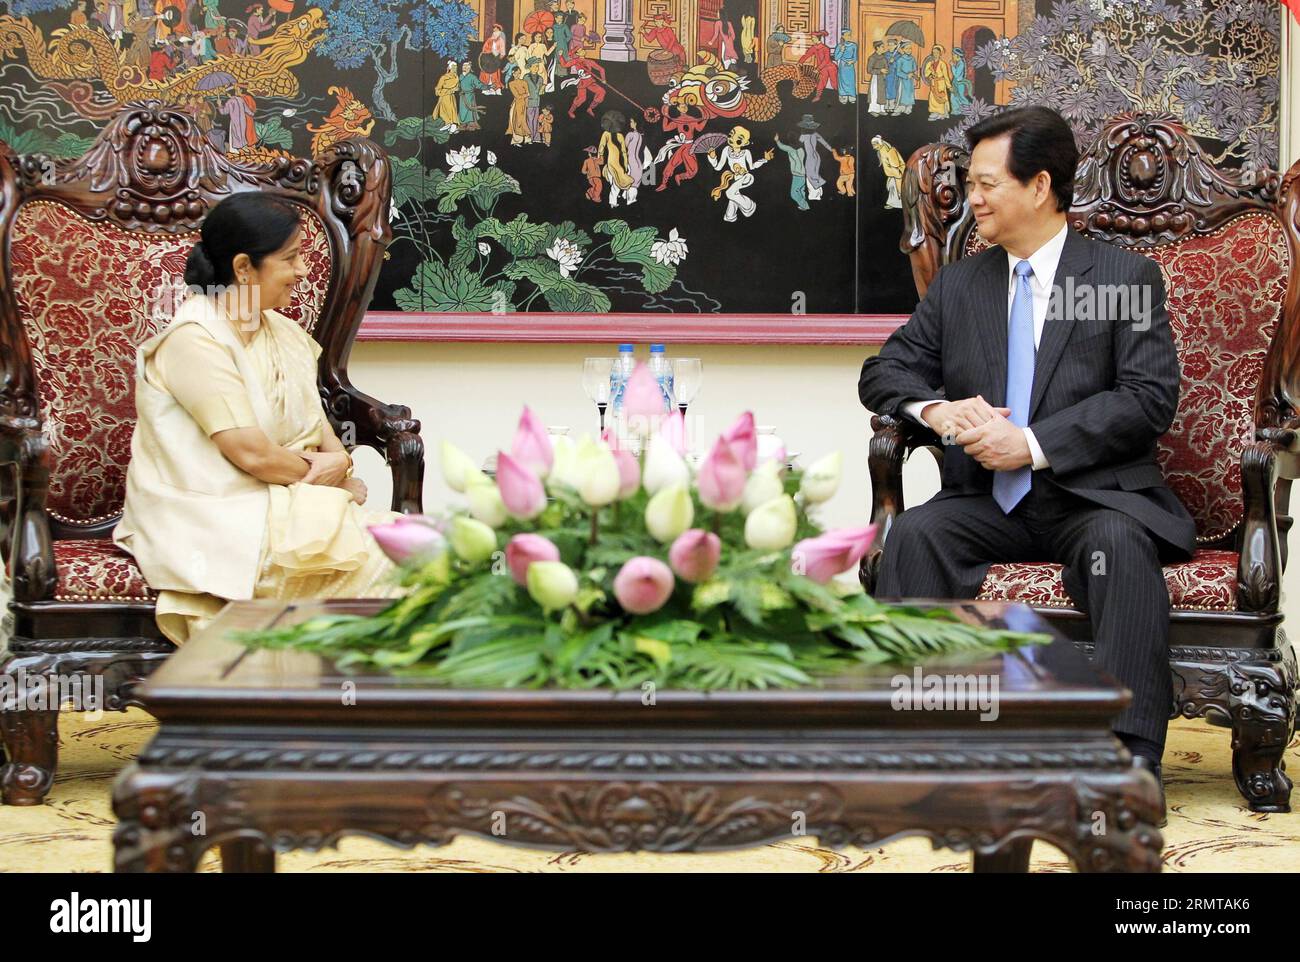 (140825)-- HANOI, 25. August 2014 -- der vietnamesische Premierminister Nguyen Tan Dung (R) trifft sich mit der indischen Außenministerin Sushma Swaraj in Hanoi, der Hauptstadt Vietnams, am 25. August 2014. Swaraj sagte hier am Montag, dass sie von Indien und Vietnam erwarte, dass sie die bilateralen Handels- und Investitionseinnahmen gegenüber dem derzeitigen Niveau verdoppeln oder verdreifachen würden. ) VIETNAM-HANOI-INDIEN-TREFFEN VNA PUBLICATIONxNOTxINxCHN Hanoi August 25 2014 die vietnamesischen Ministerpräsidenten Nguyen TAN Dung r treffen sich mit den indischen Außenministern Sushma Swaraj in der vietnamesischen Hauptstadt Hanoi August 25 2014 Swaraj sagte hier AM Montag Thatcher She Ex Stockfoto